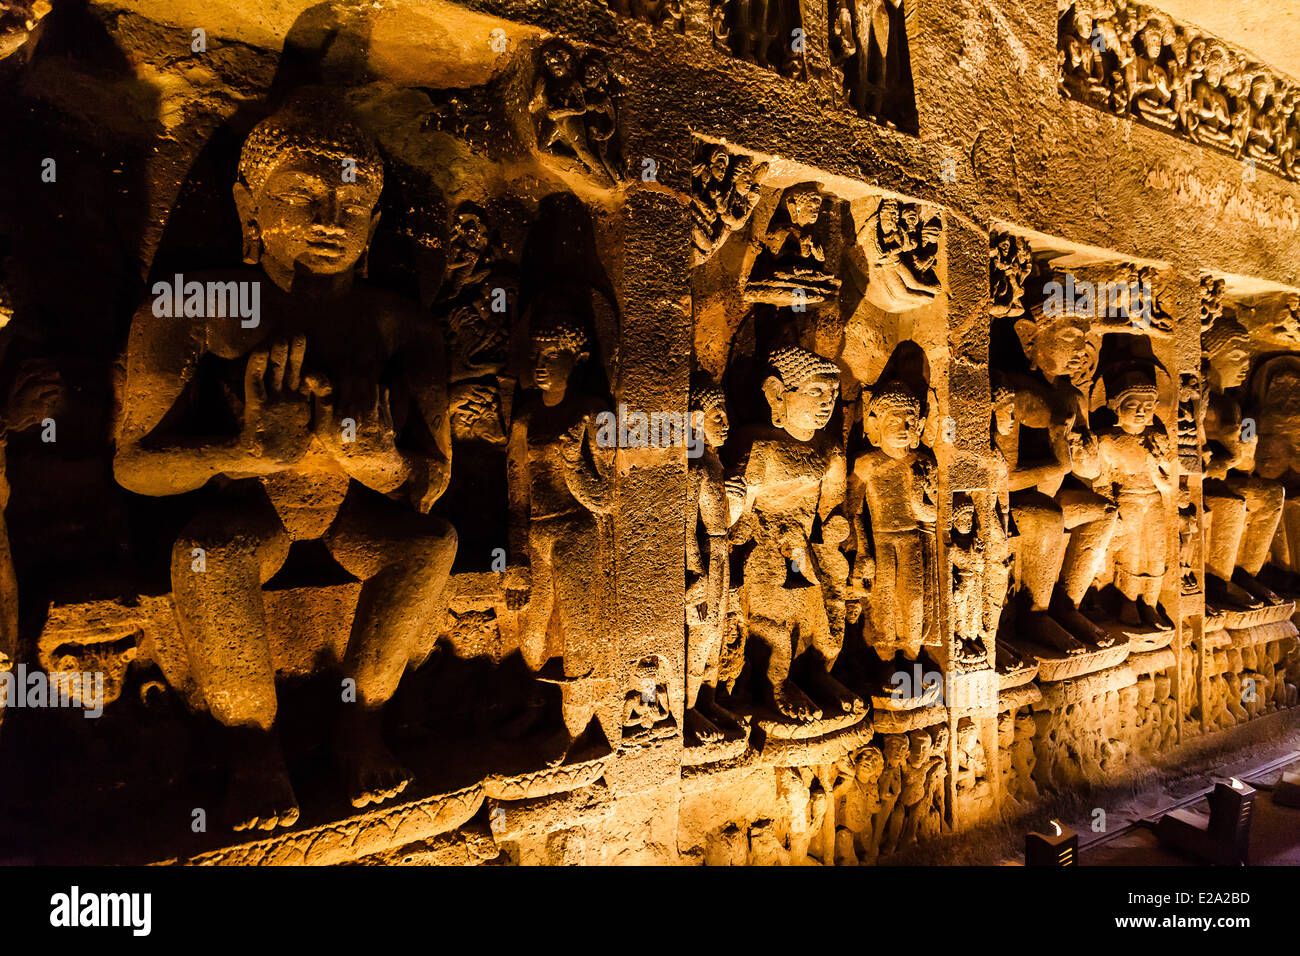 Indien, Maharashtra state, Ajanta, Basrelief in einer Höhle als Weltkulturerbe der UNESCO aufgeführt Stockfoto